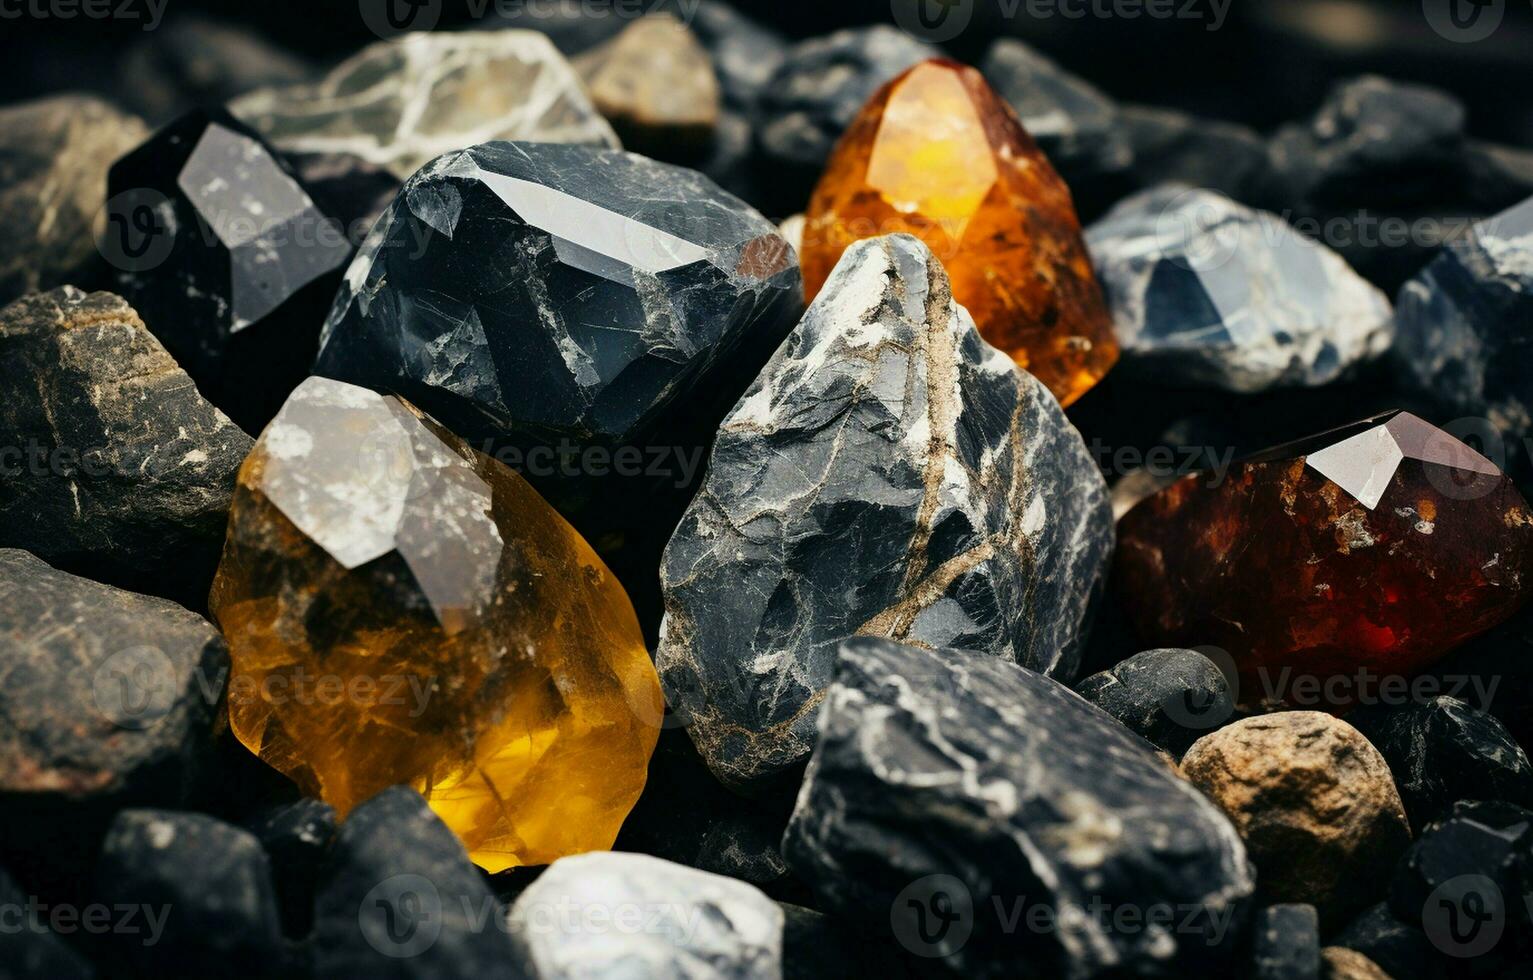 natural pedras a partir de brasil, ouro, prata, rude diamante, e hematita. brasileiro mineral Extração conceito, industrial ou decorativo pedras. foto